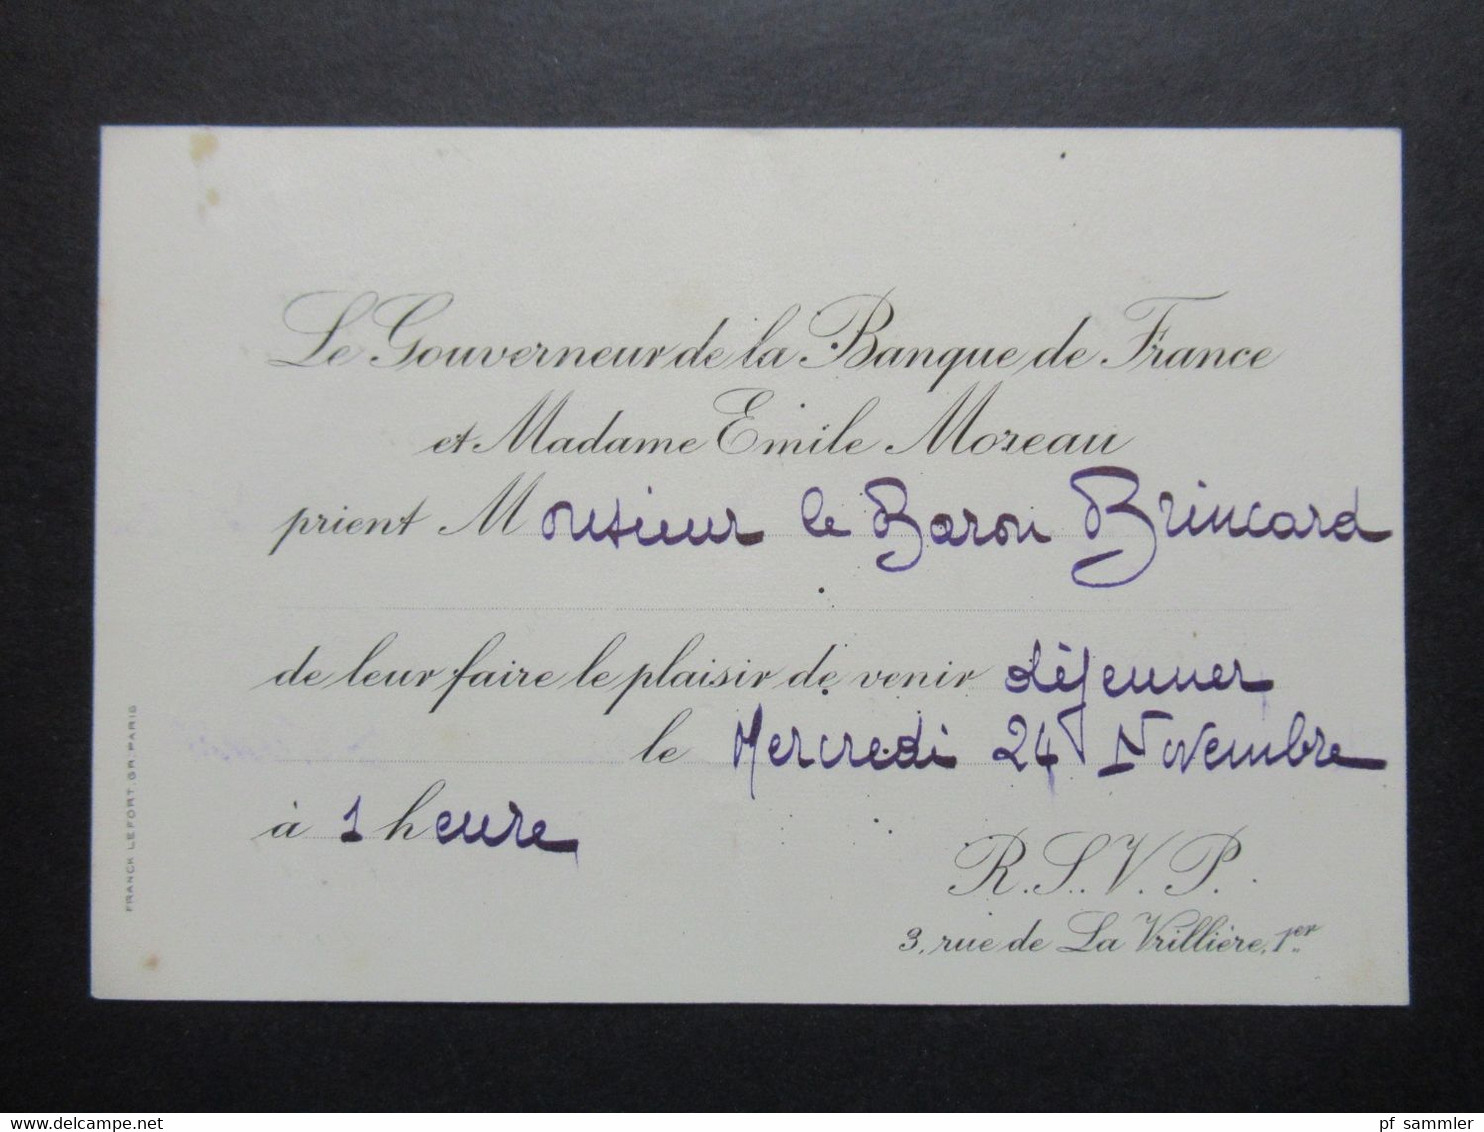 Frankreich 1920er Jahre Einladung Dejeuner Vom Governeur De La Banque De France Et Madame Emile Moreau - Tickets - Vouchers